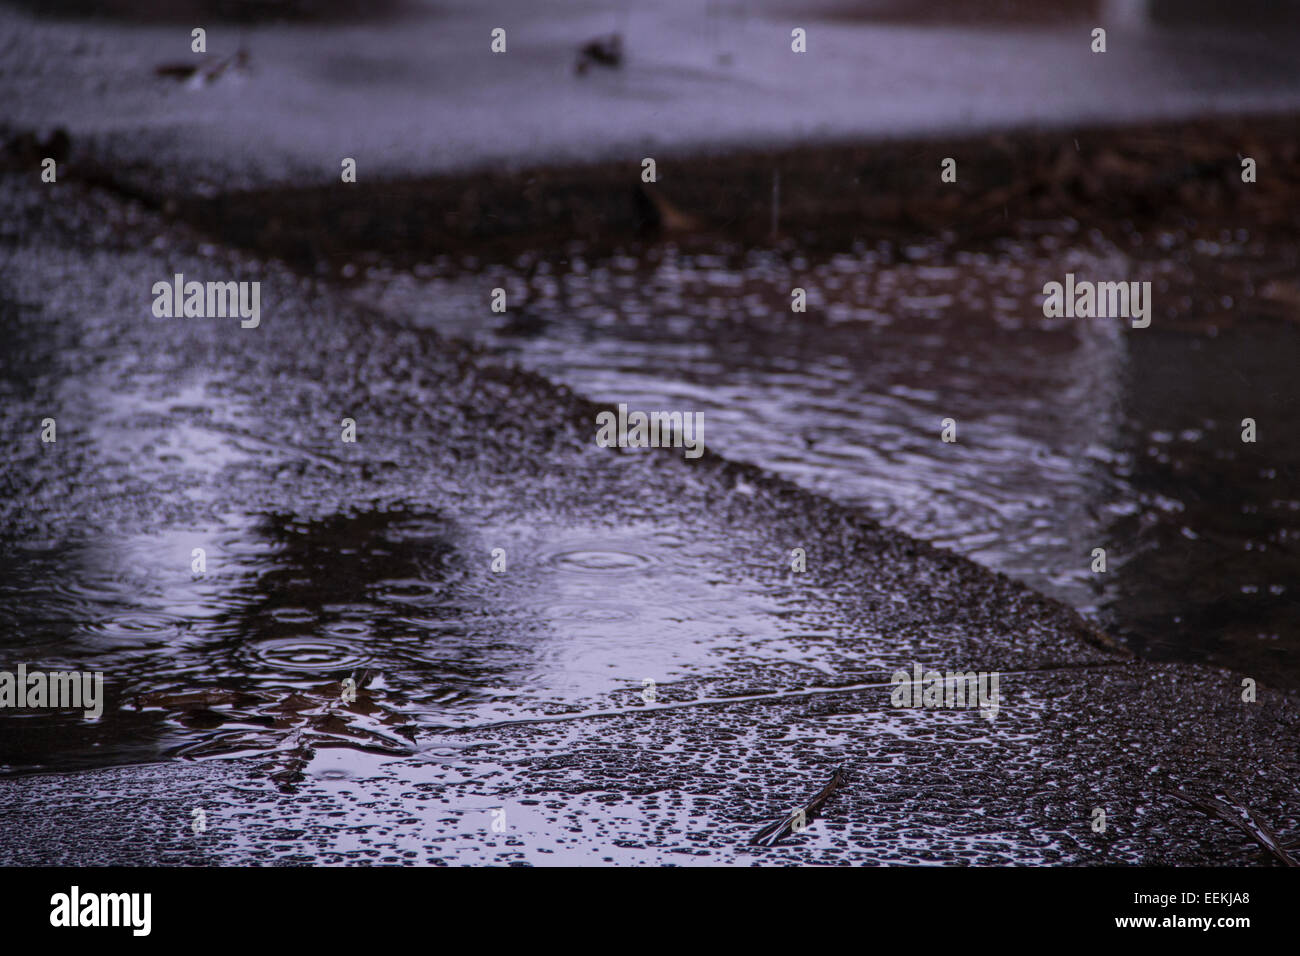 Erhöhten Bürgersteige an einem regnerischen, trüben Tag nass. Stockfoto